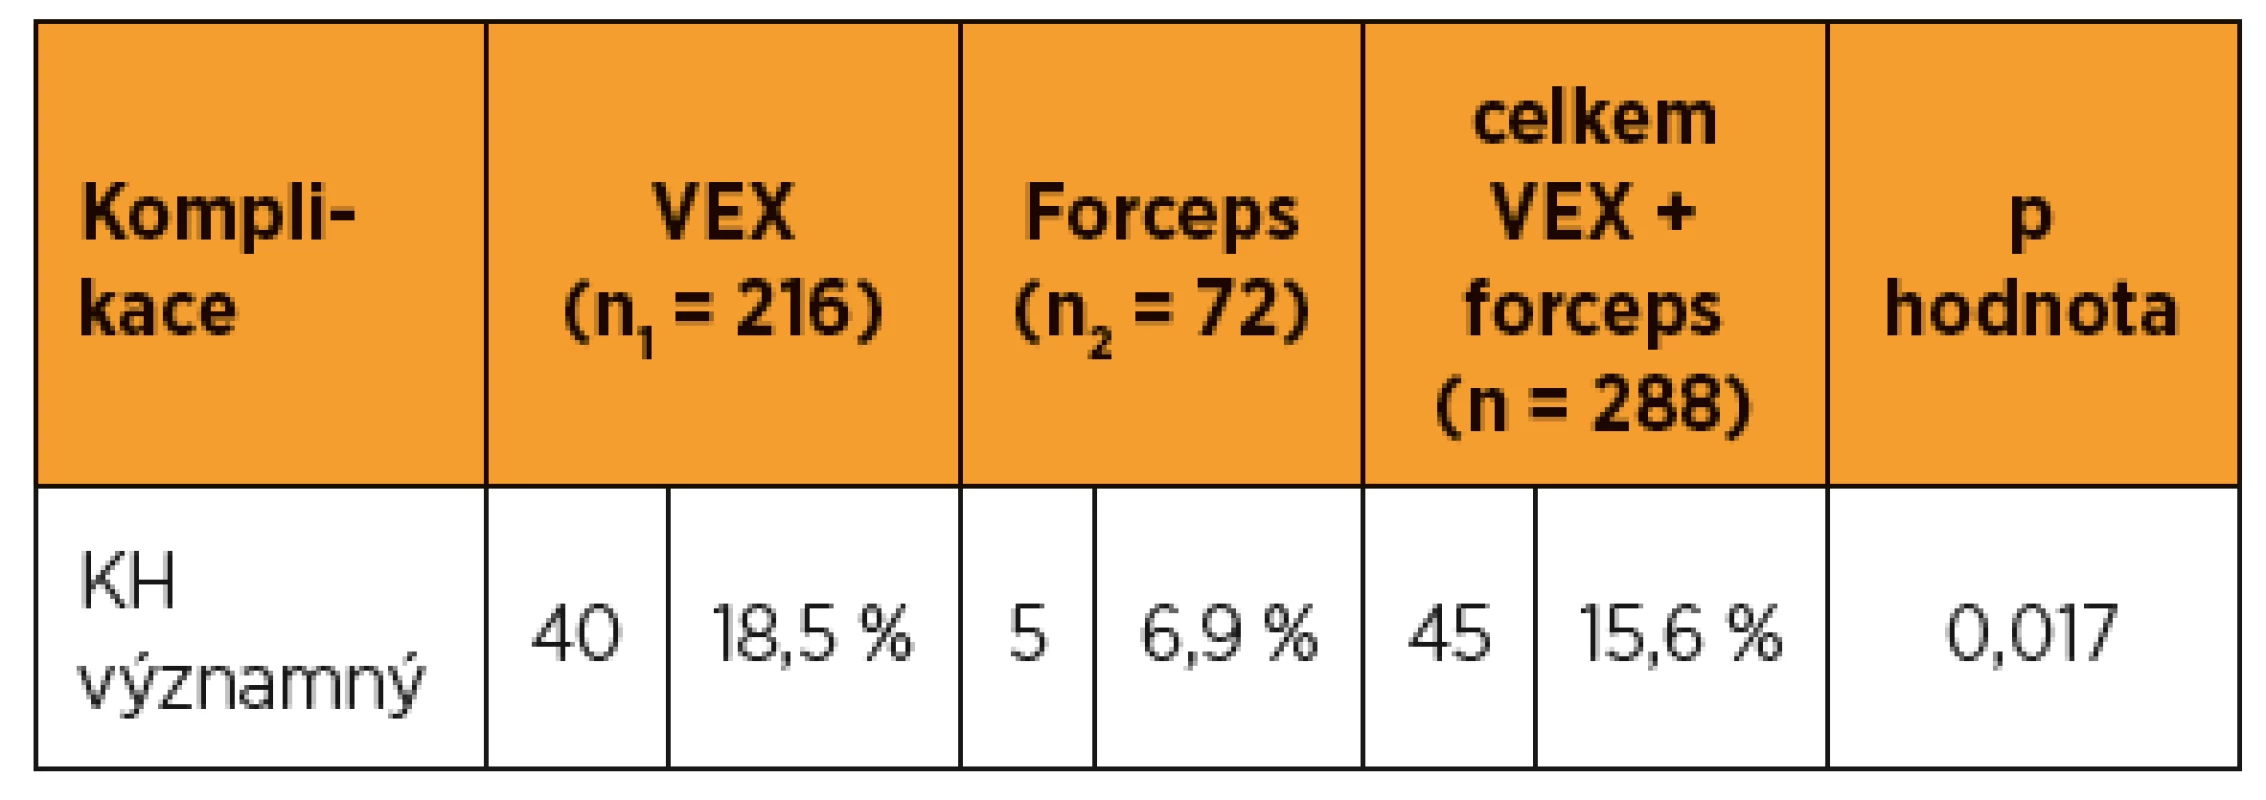 Porovnání výskytu významných kefalhematomů po použití
VEX a forcepsu na GPK FN Brno v období 6/2016 až 8/2017